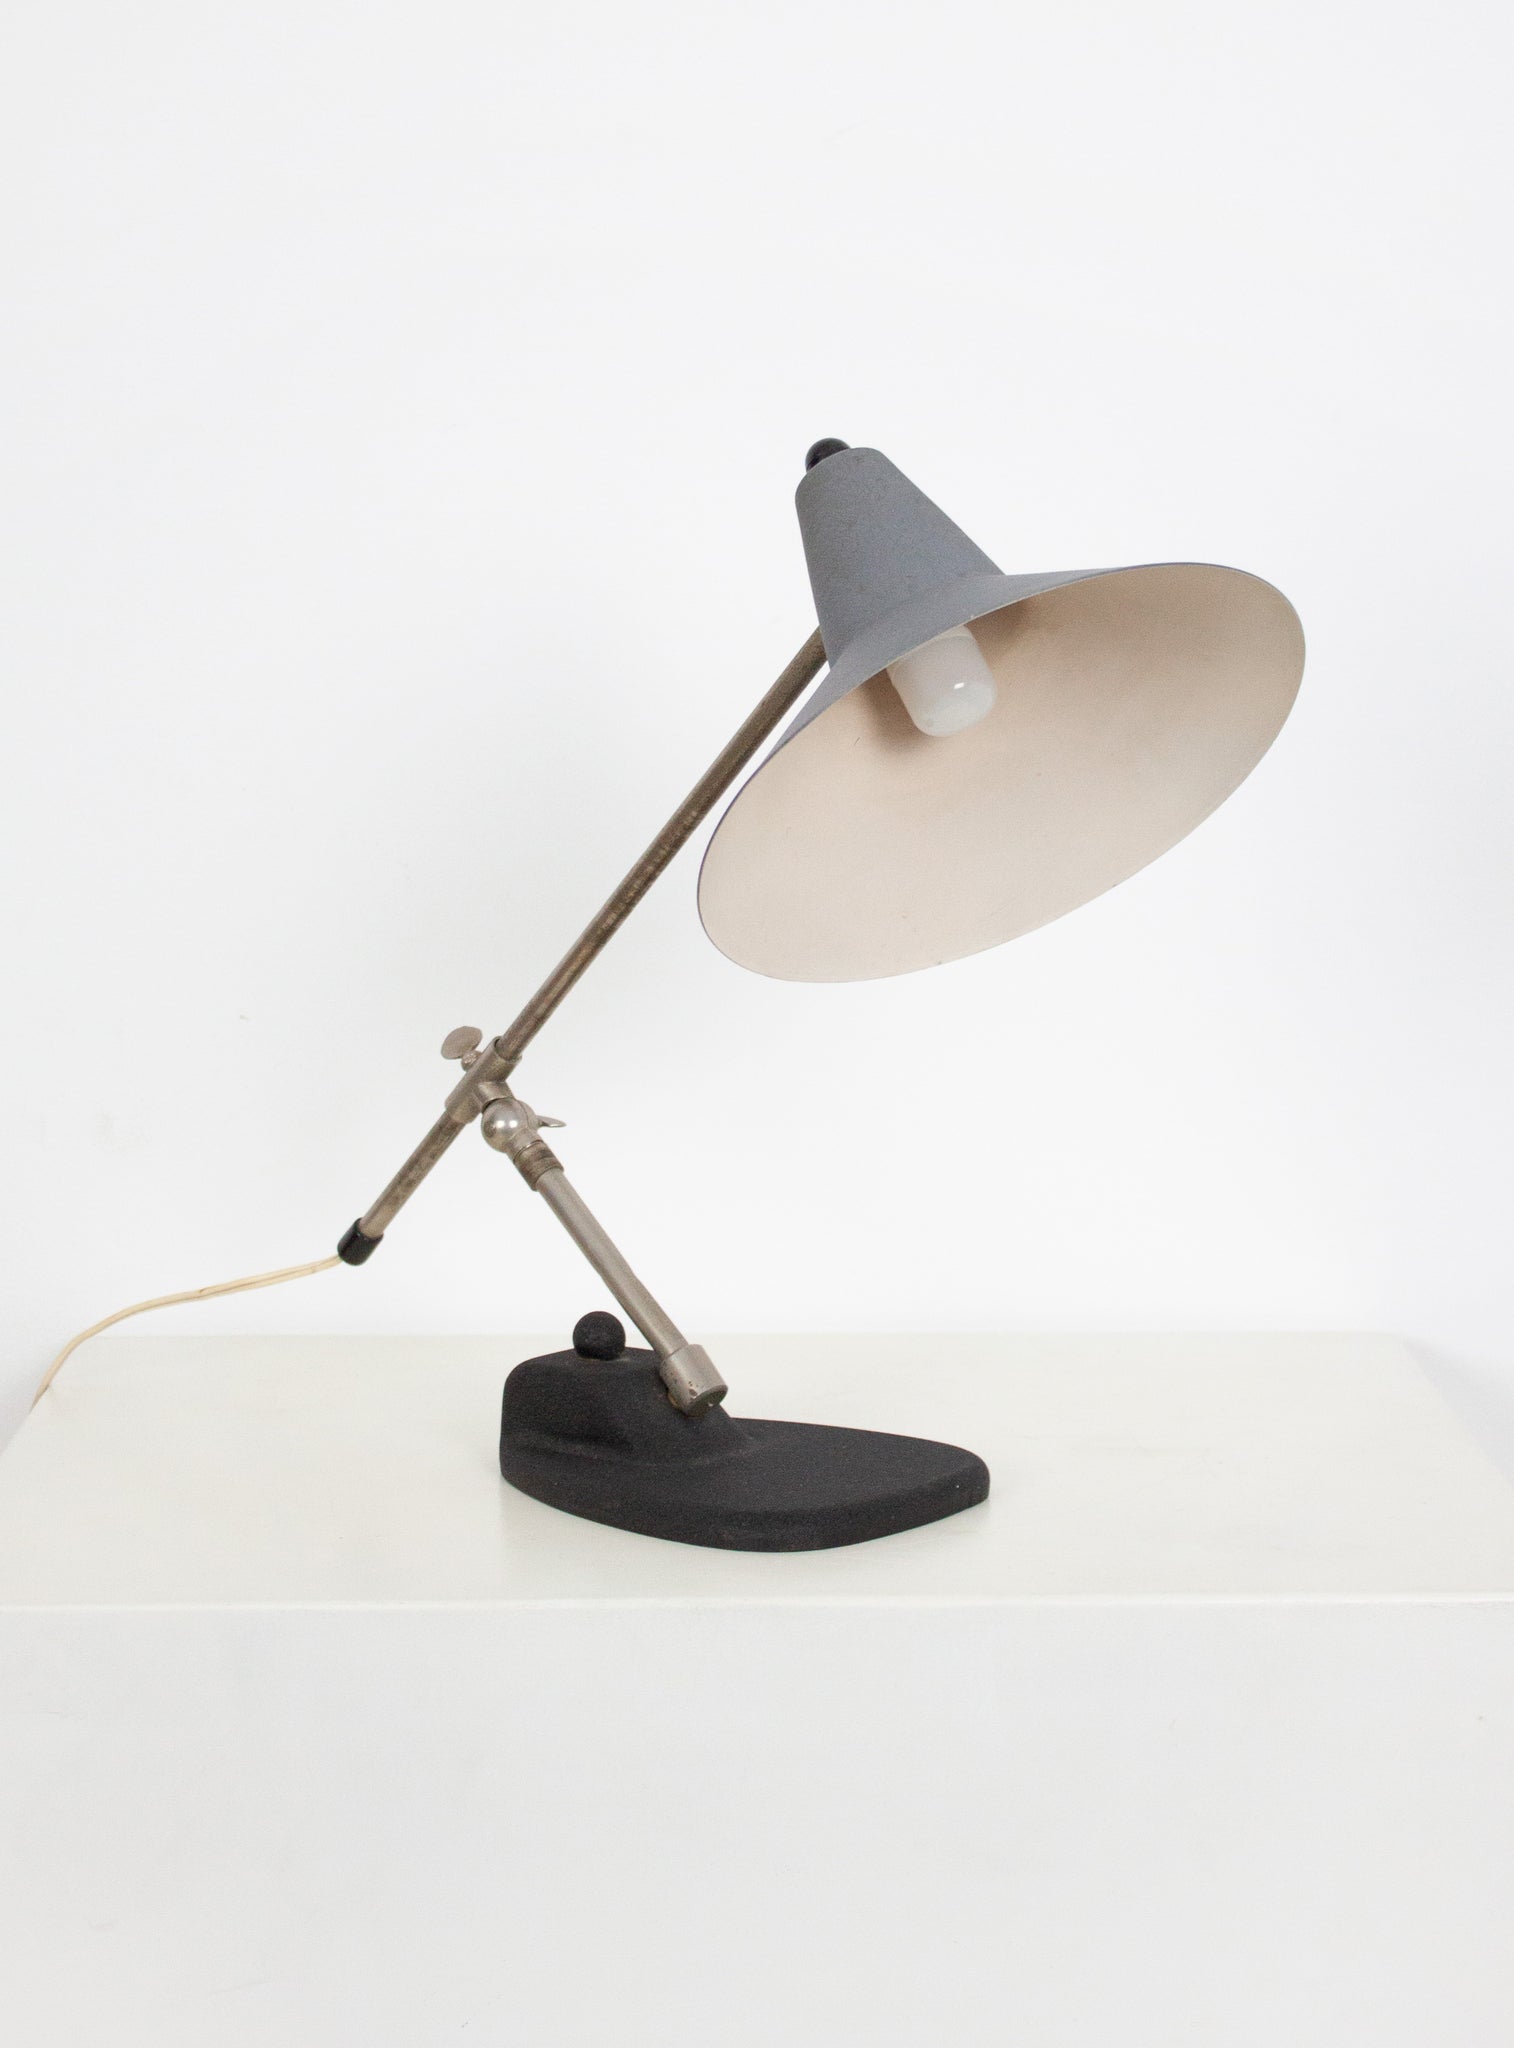 Metal Desk Lamp in style of Stilnovo or Cosack (Grey)